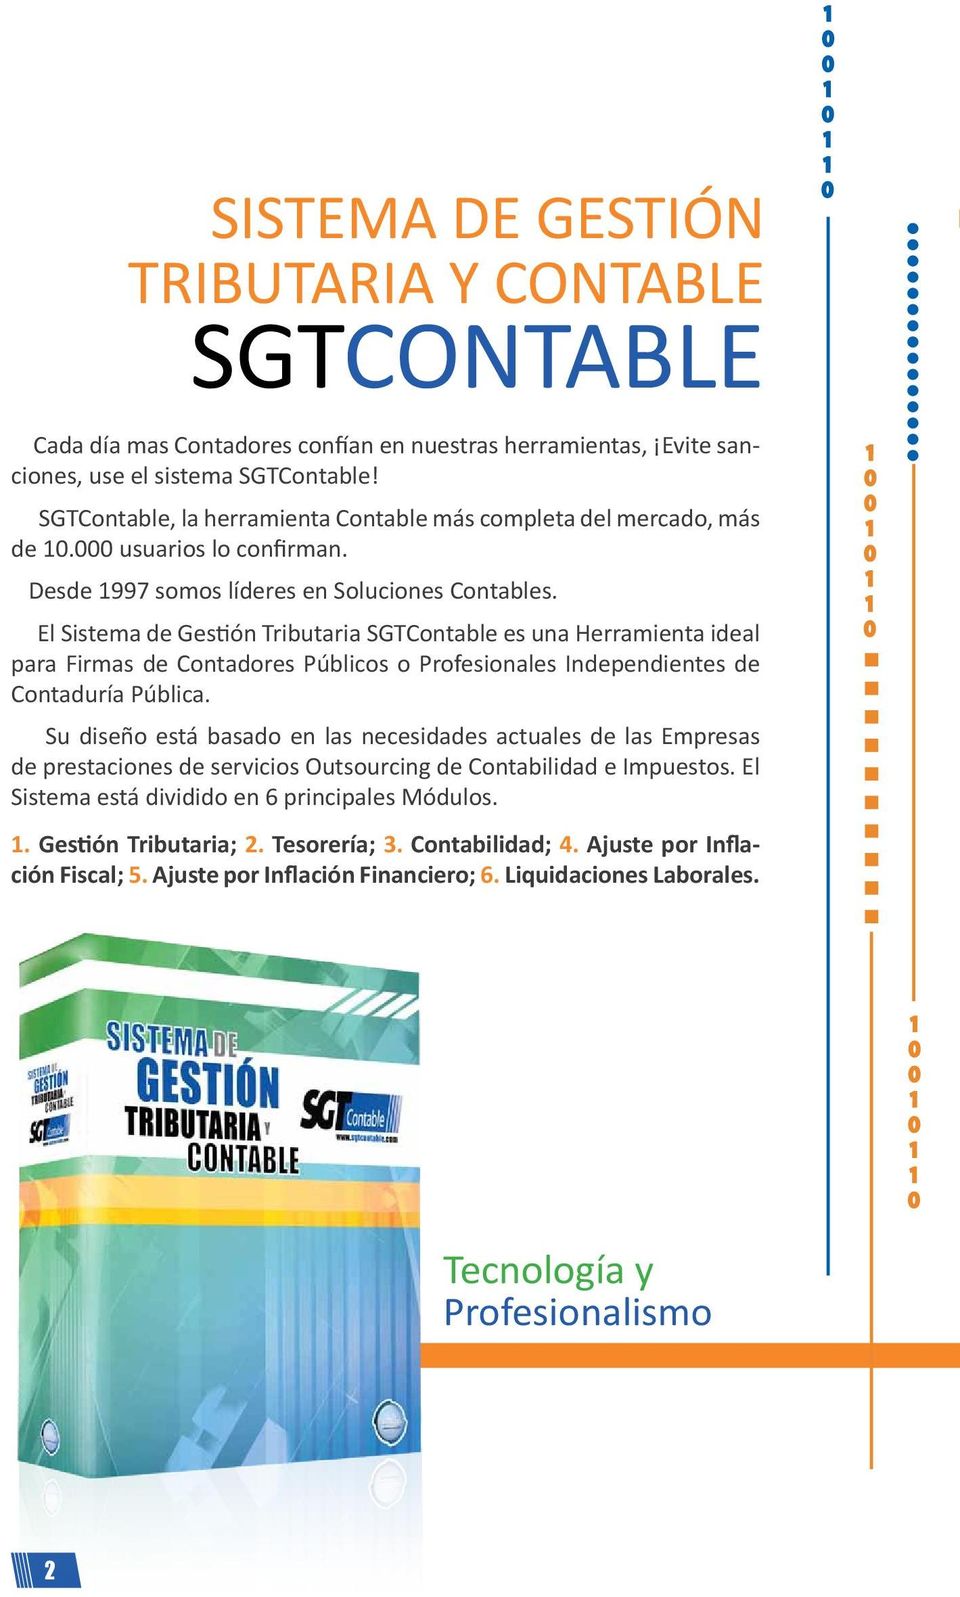 El Sistema de Gestión Tributaria SGTContable es una Herramienta ideal para Firmas de Contadores Públicos o Profesionales Independientes de Contaduría Pública.